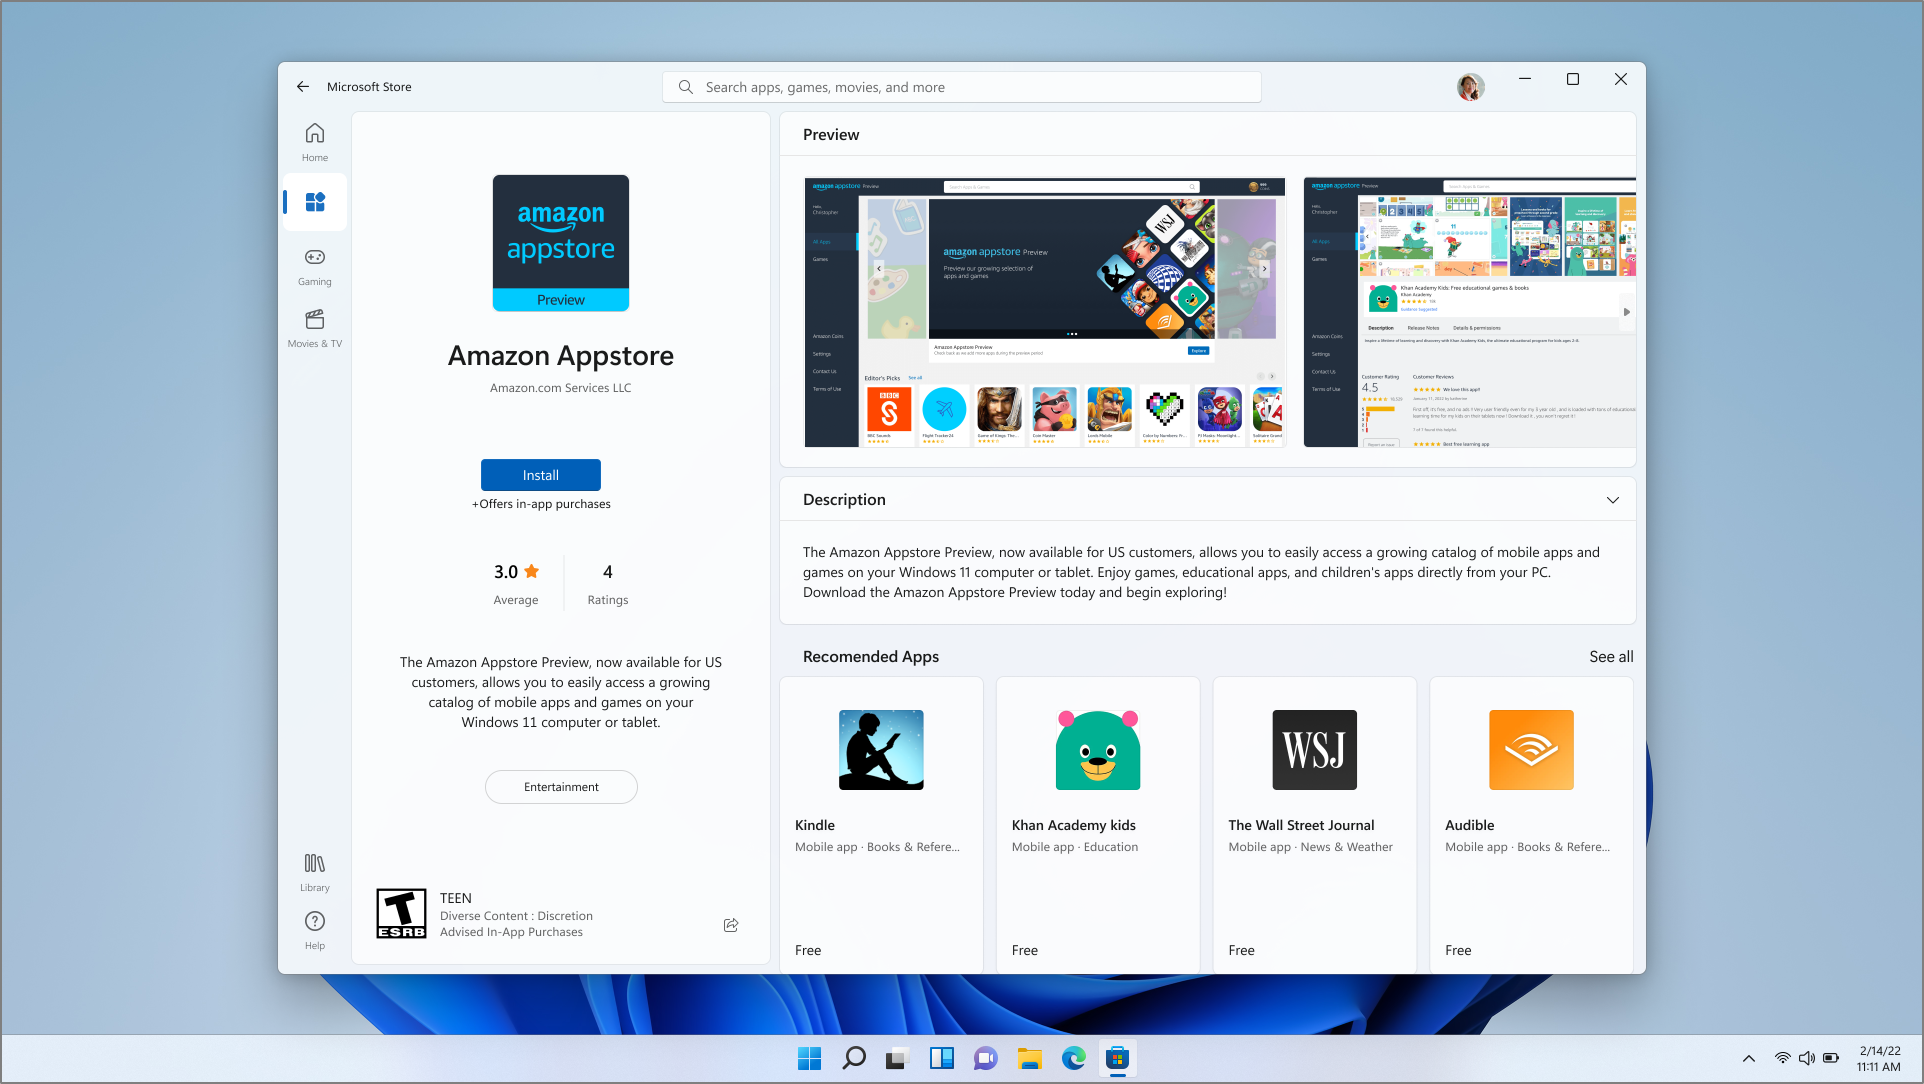 Amazon Appstore atsisiuntimo puslapio "Microsoft Store" programėlėje ekrano nuotrauka.